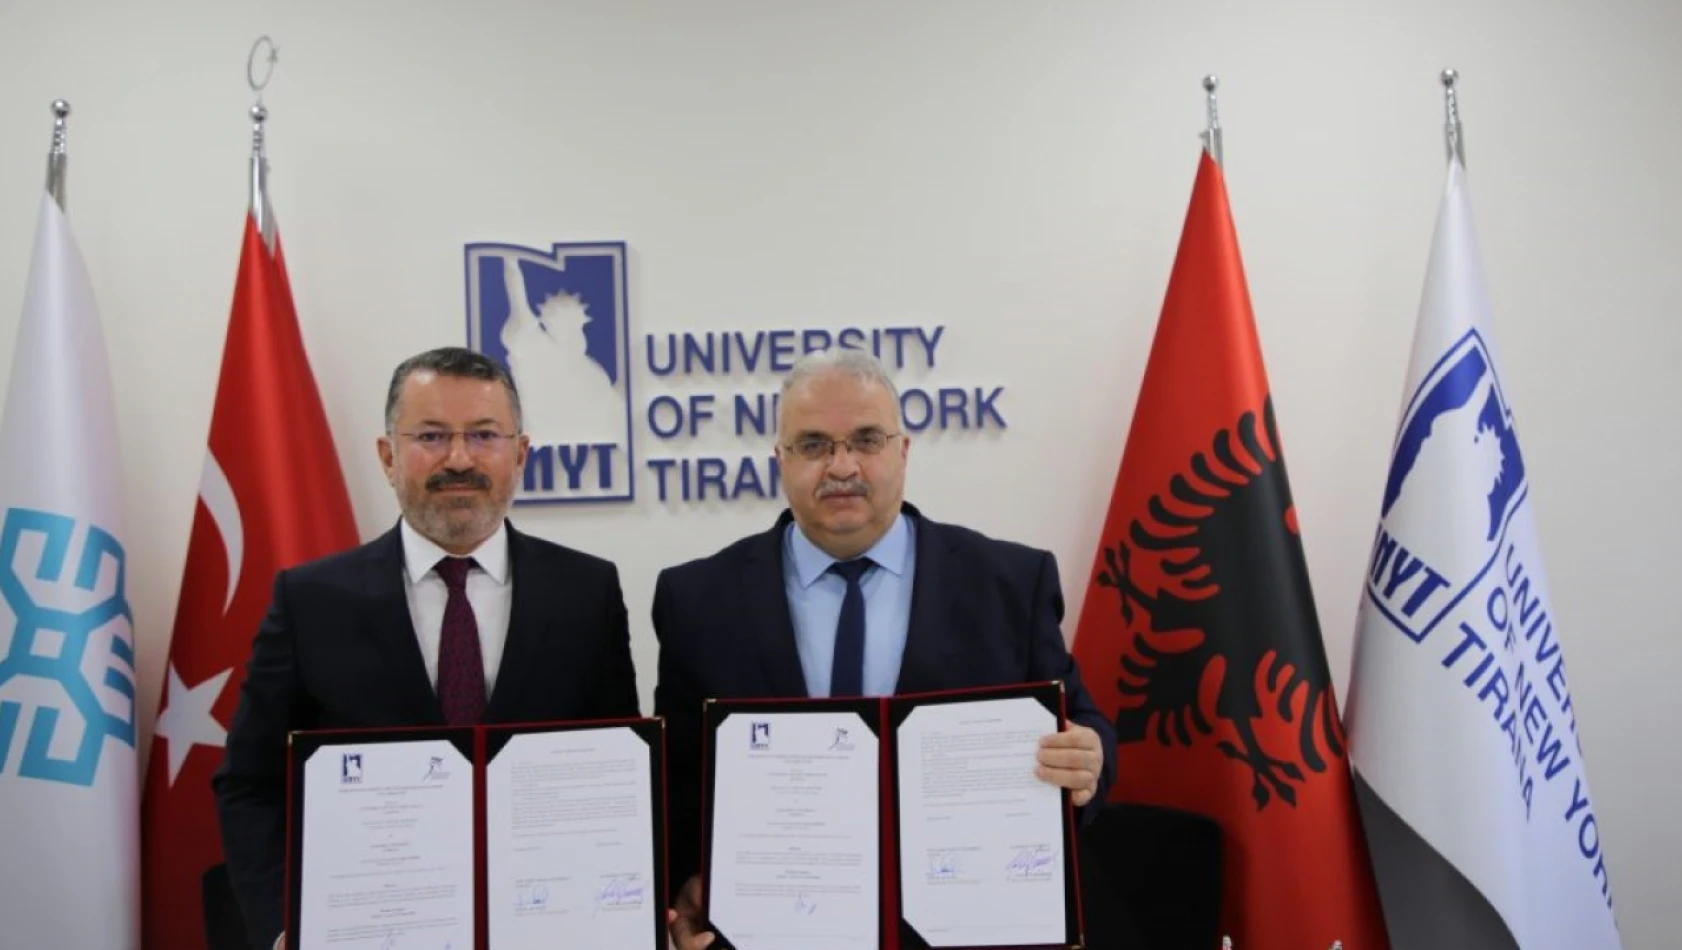 KBÜ ile Tiran New York Üniversitesi arasında iş birliği protokolleri imzalandı